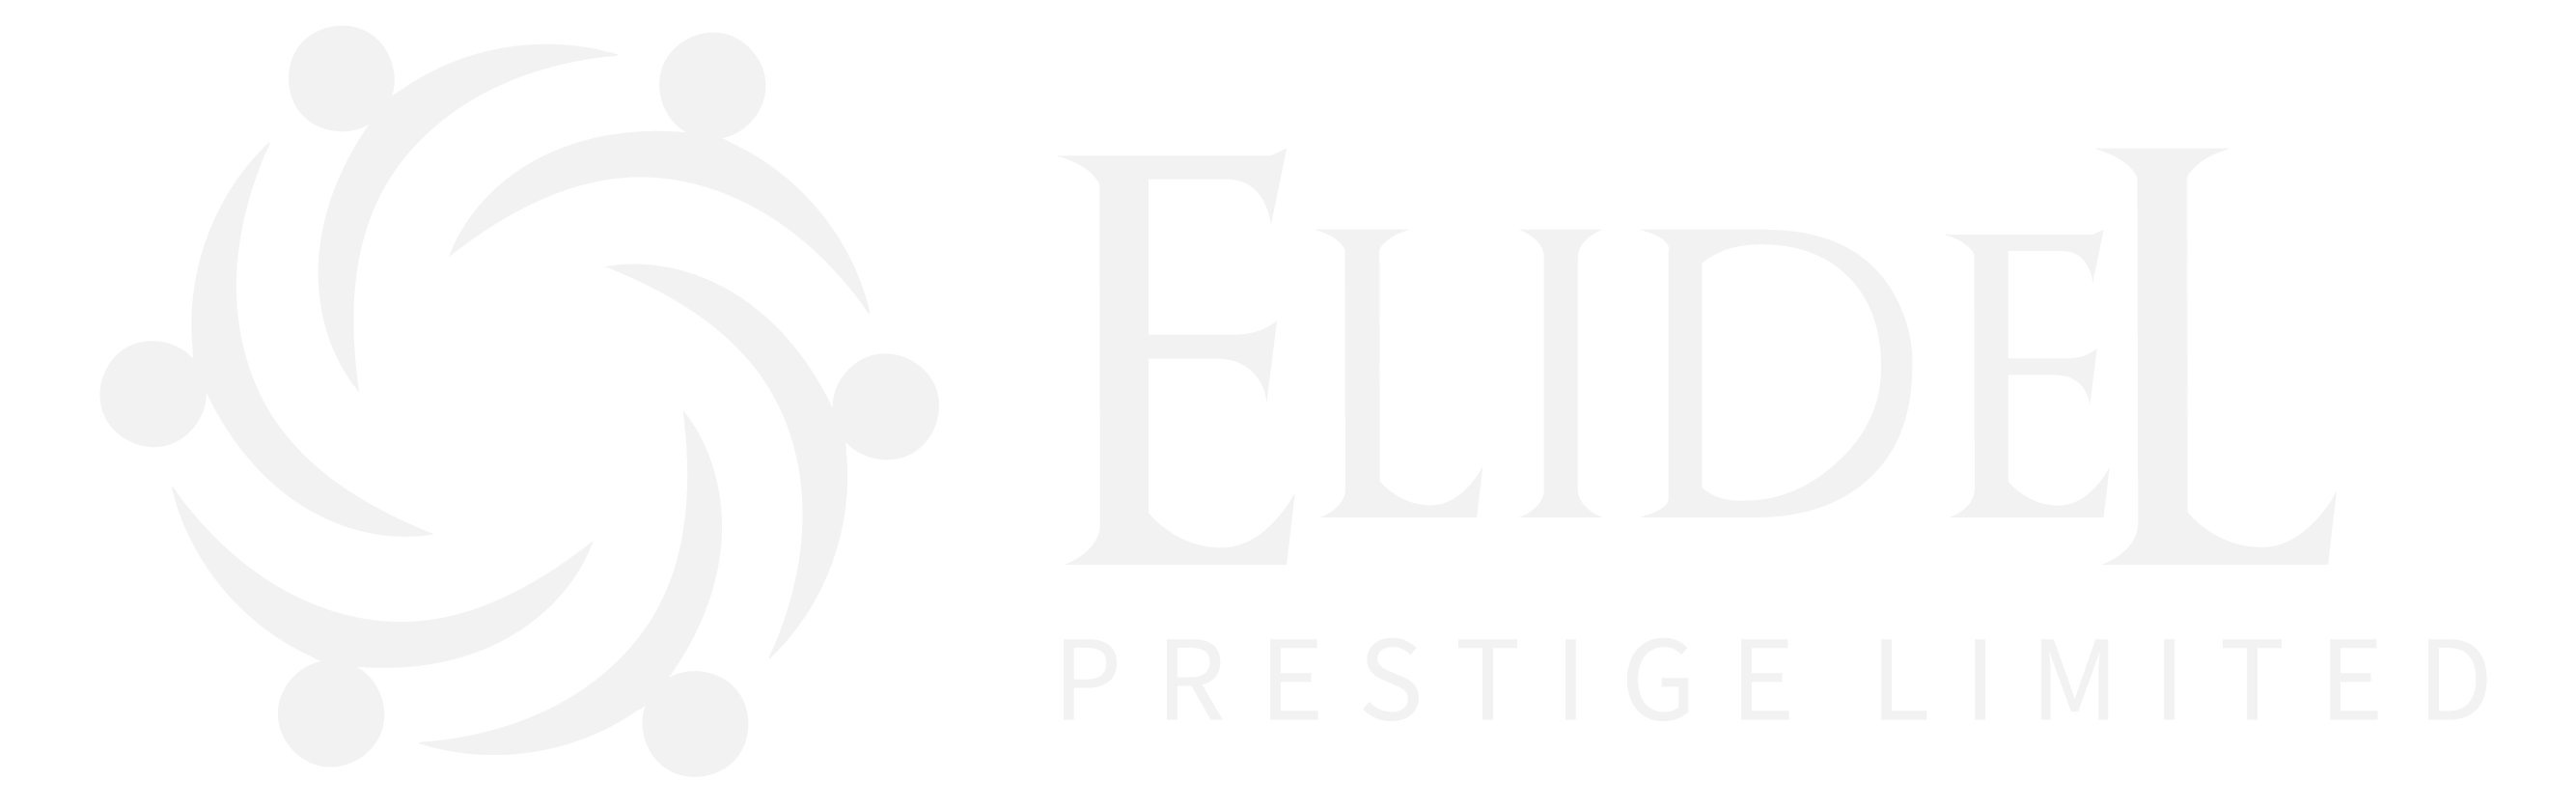 Elidel Prestige Limited